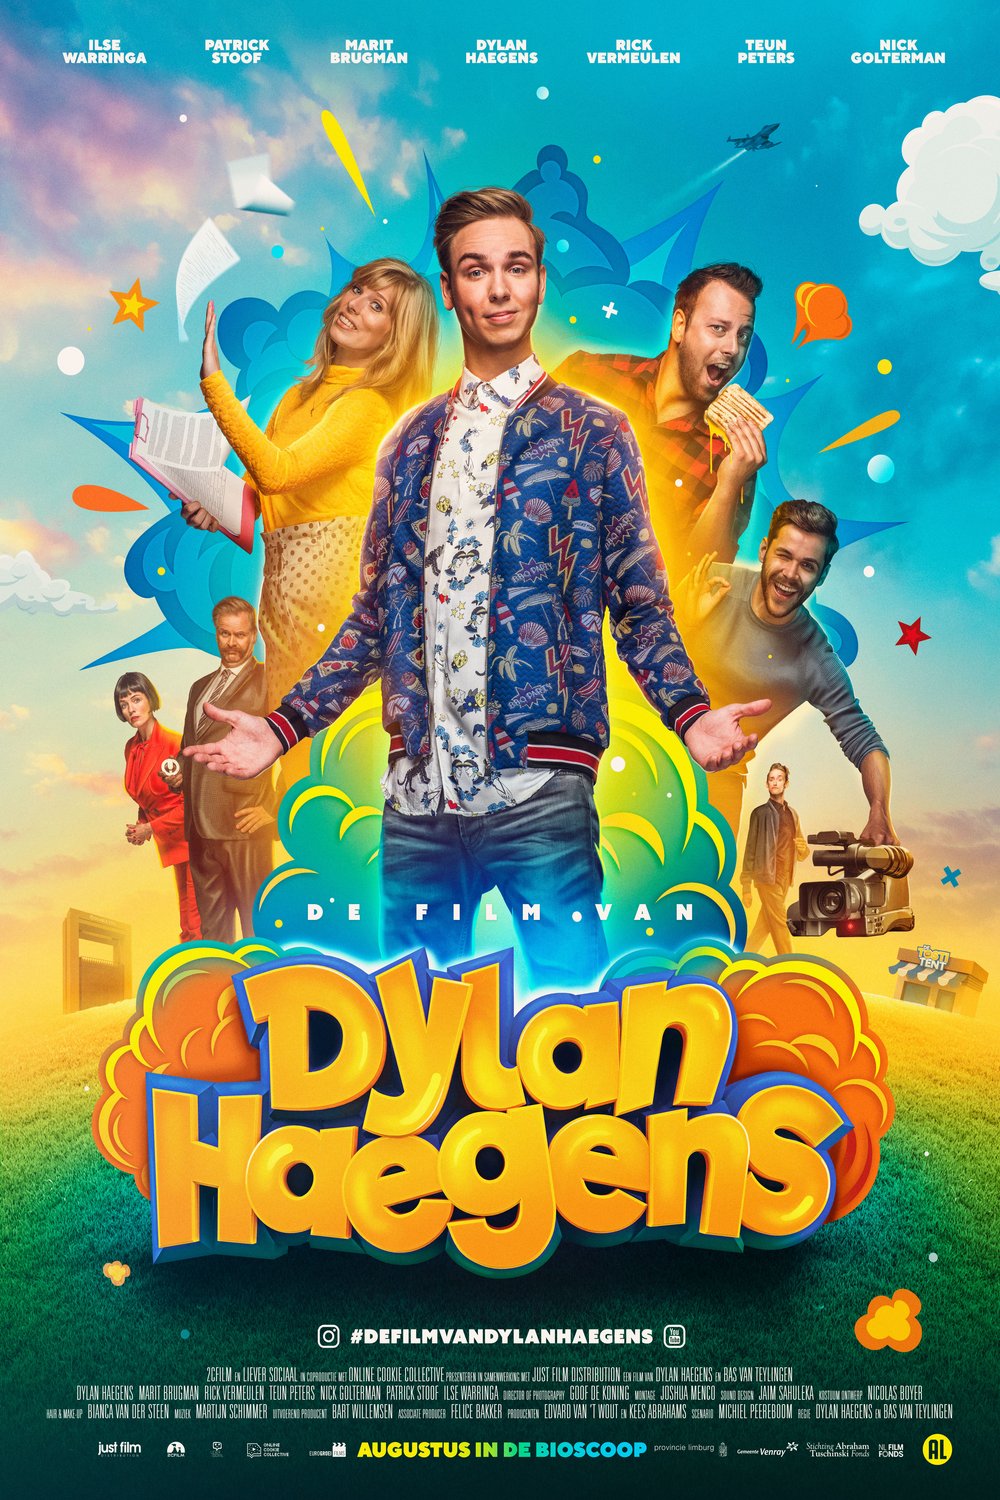 Dutch poster of the movie De Film van Dylan Haegens